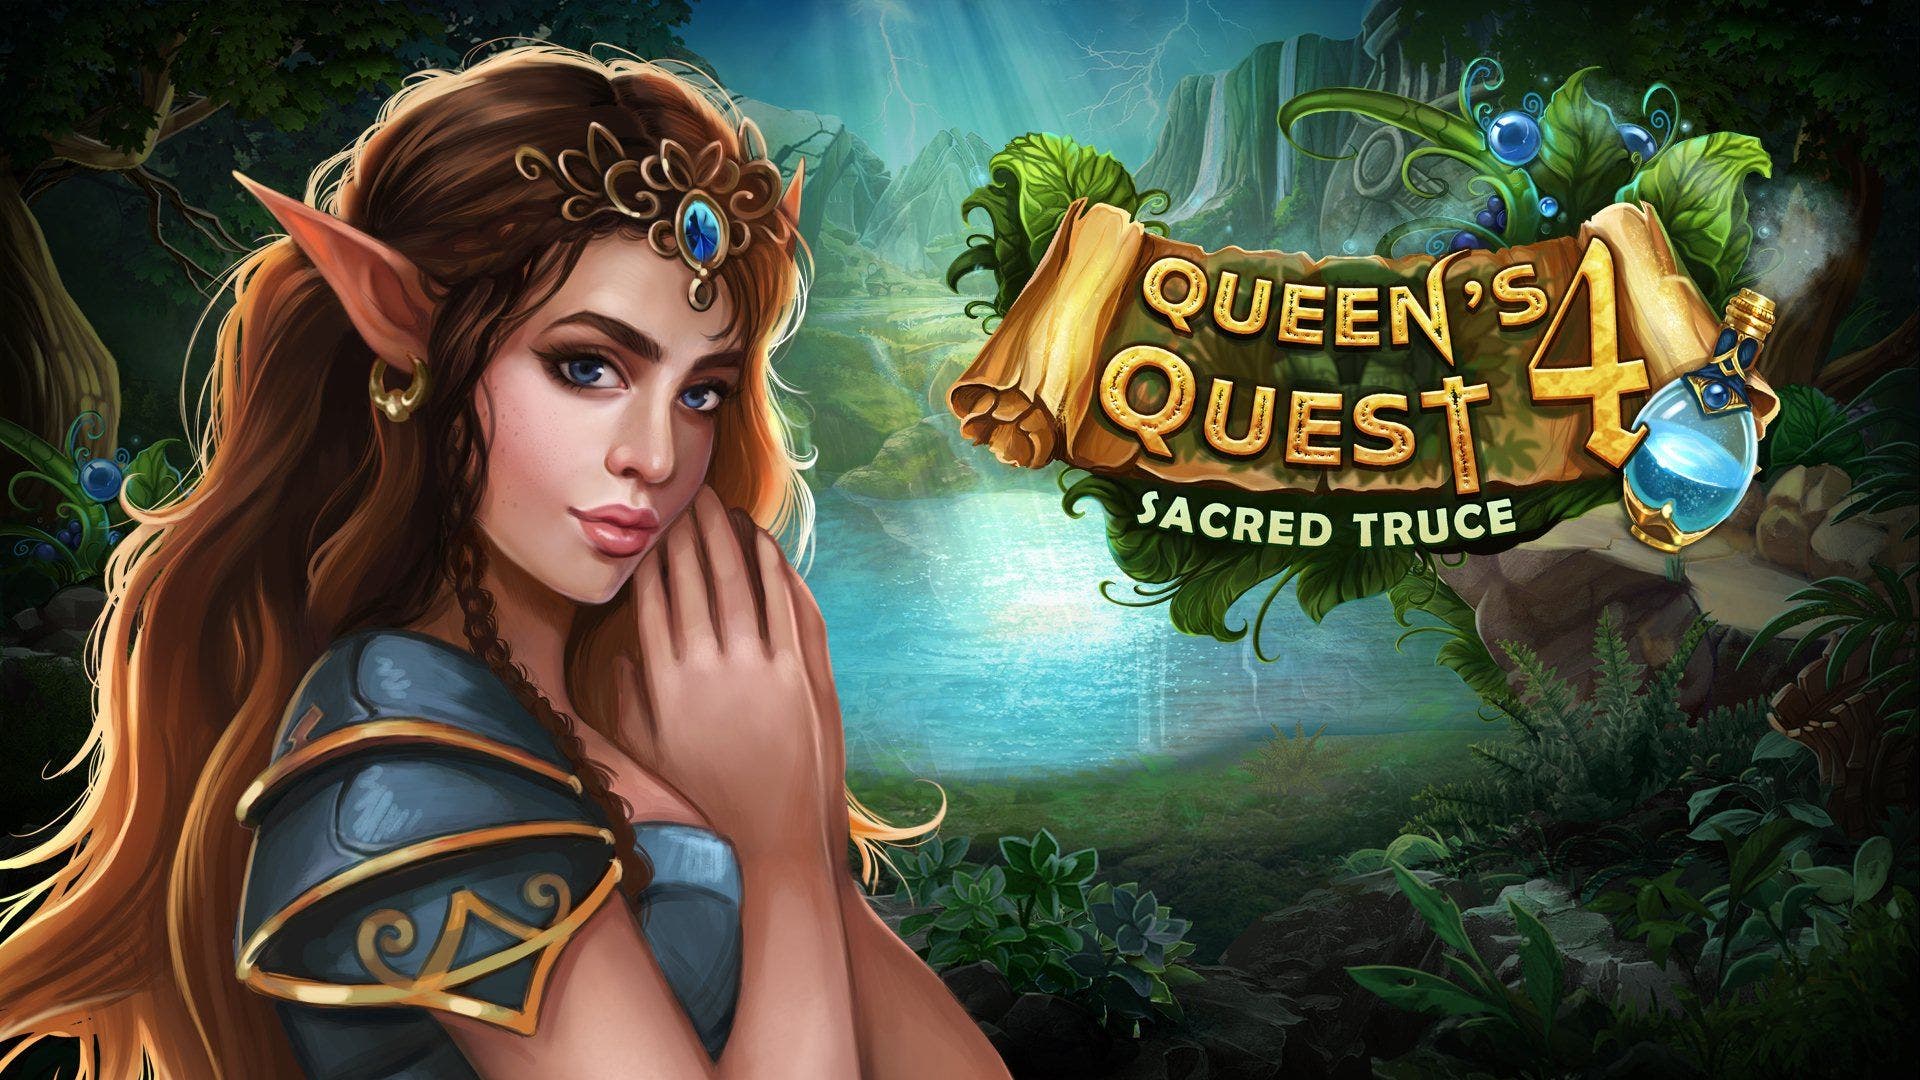 Queen’s Quest 4: Sacred Truce confirma su estreno en Nintendo Switch para el 10 de octubre